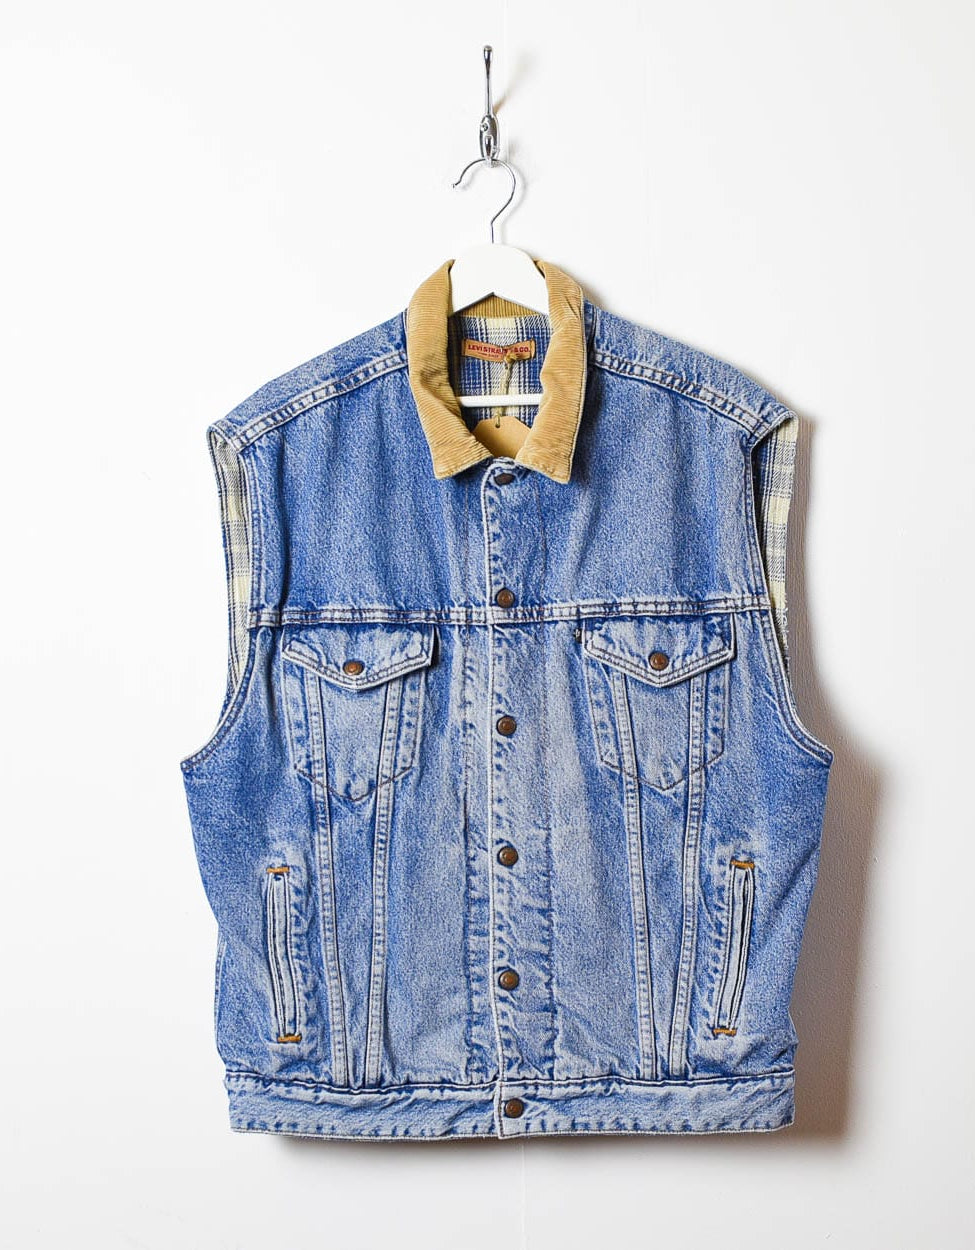 Blue Levi's Flannel Lined Denim Jacket Vest - Large